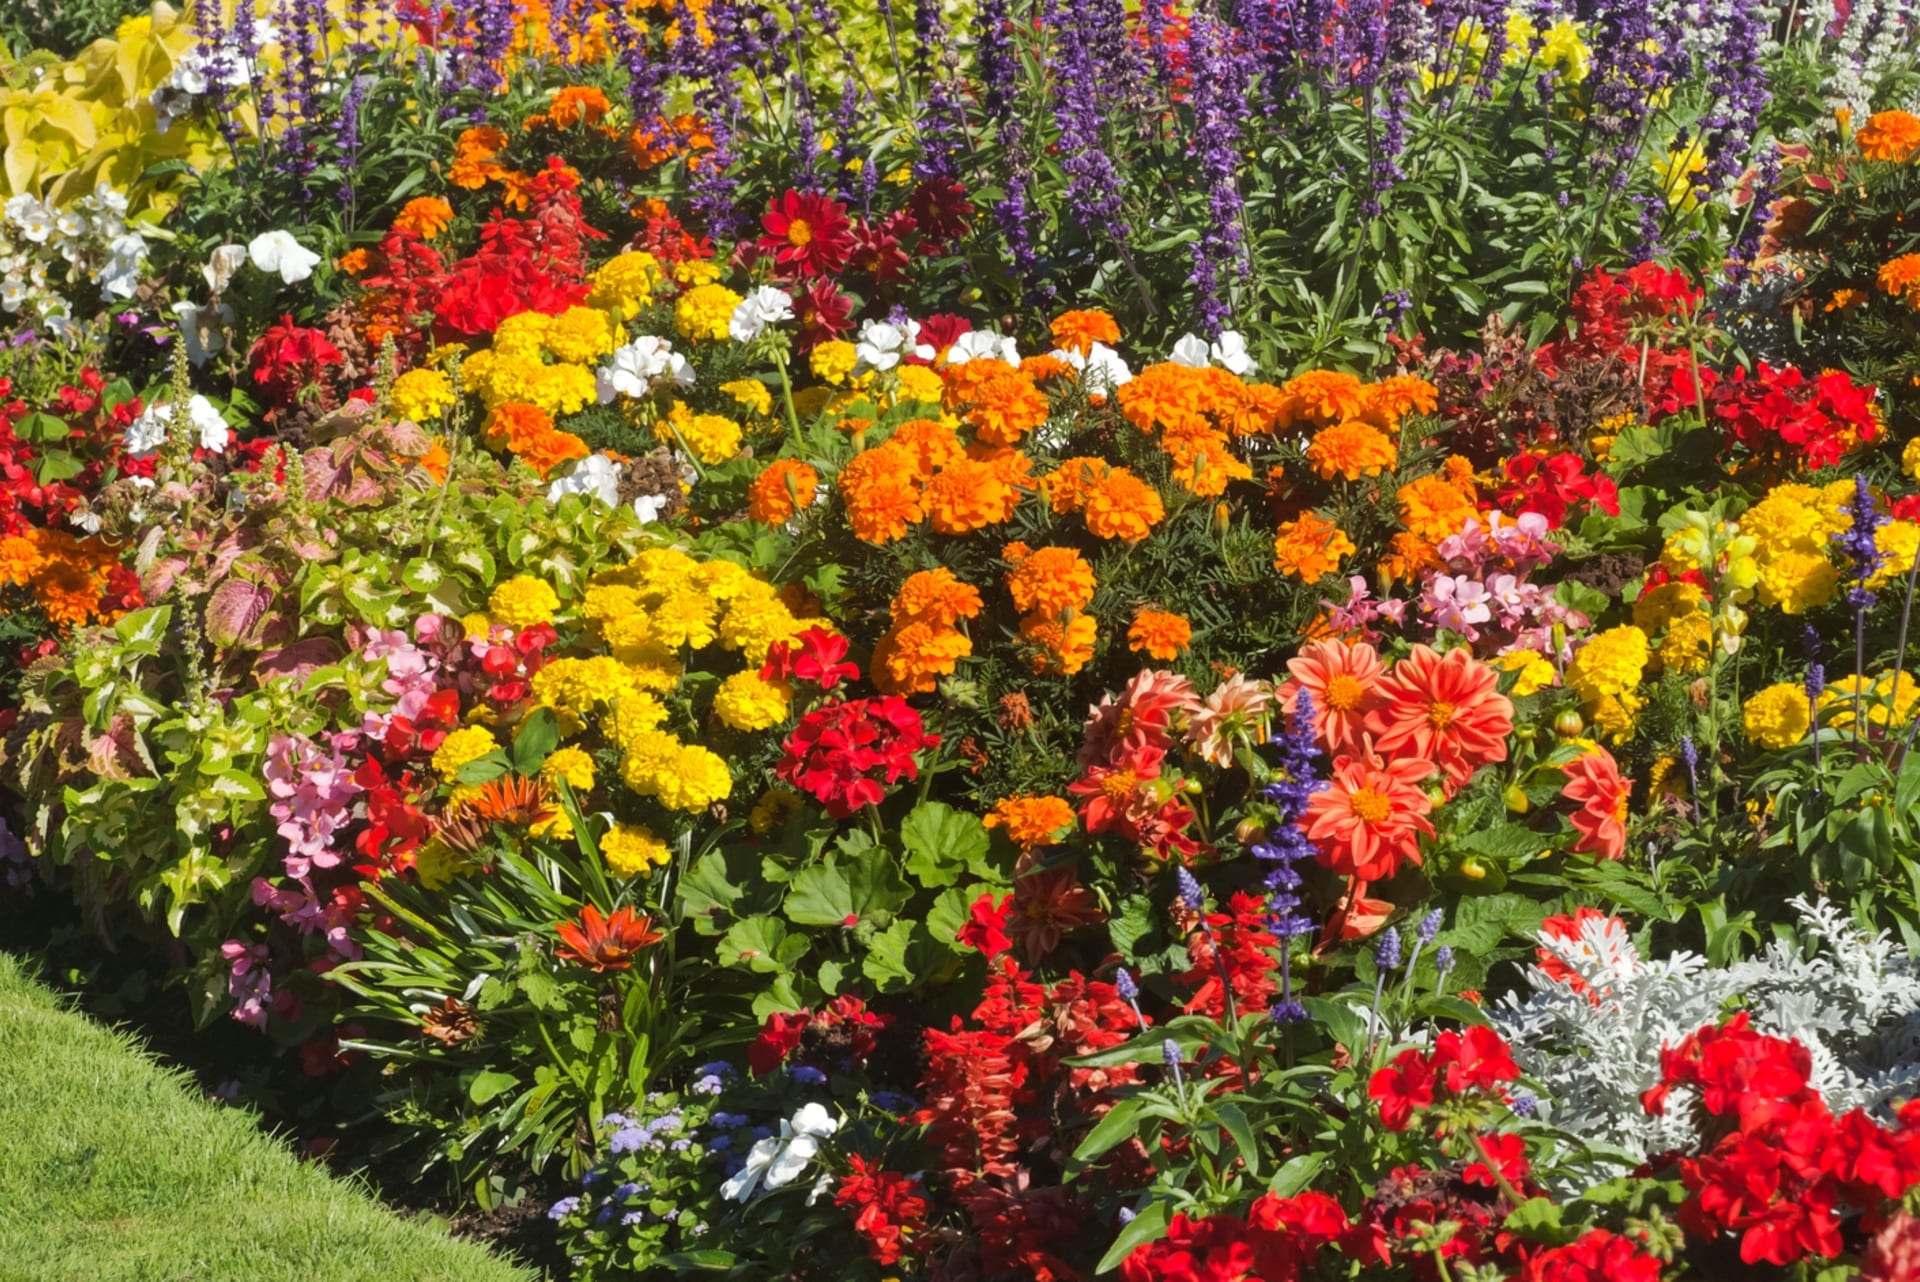 Nechte zahradu vykvést v barvách, které vás správně naladí a zharmonizují 